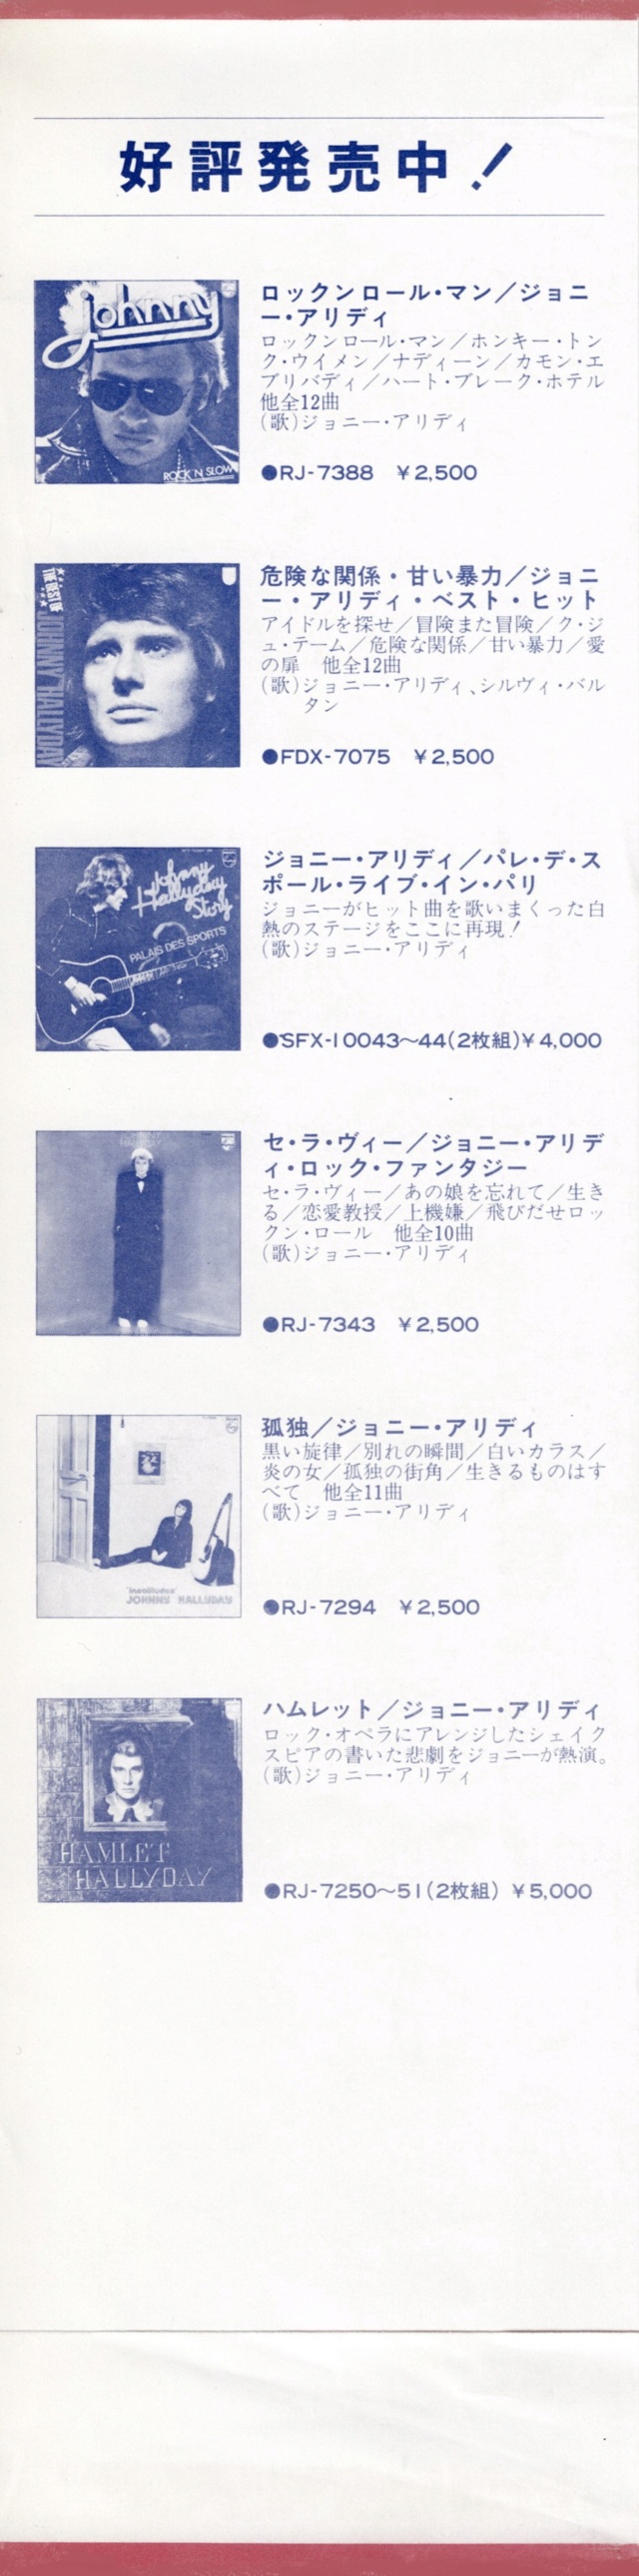 Discographie Japonaise - 4ème partie (33 T COMPILATION) - Page 15 Jpn_fd19